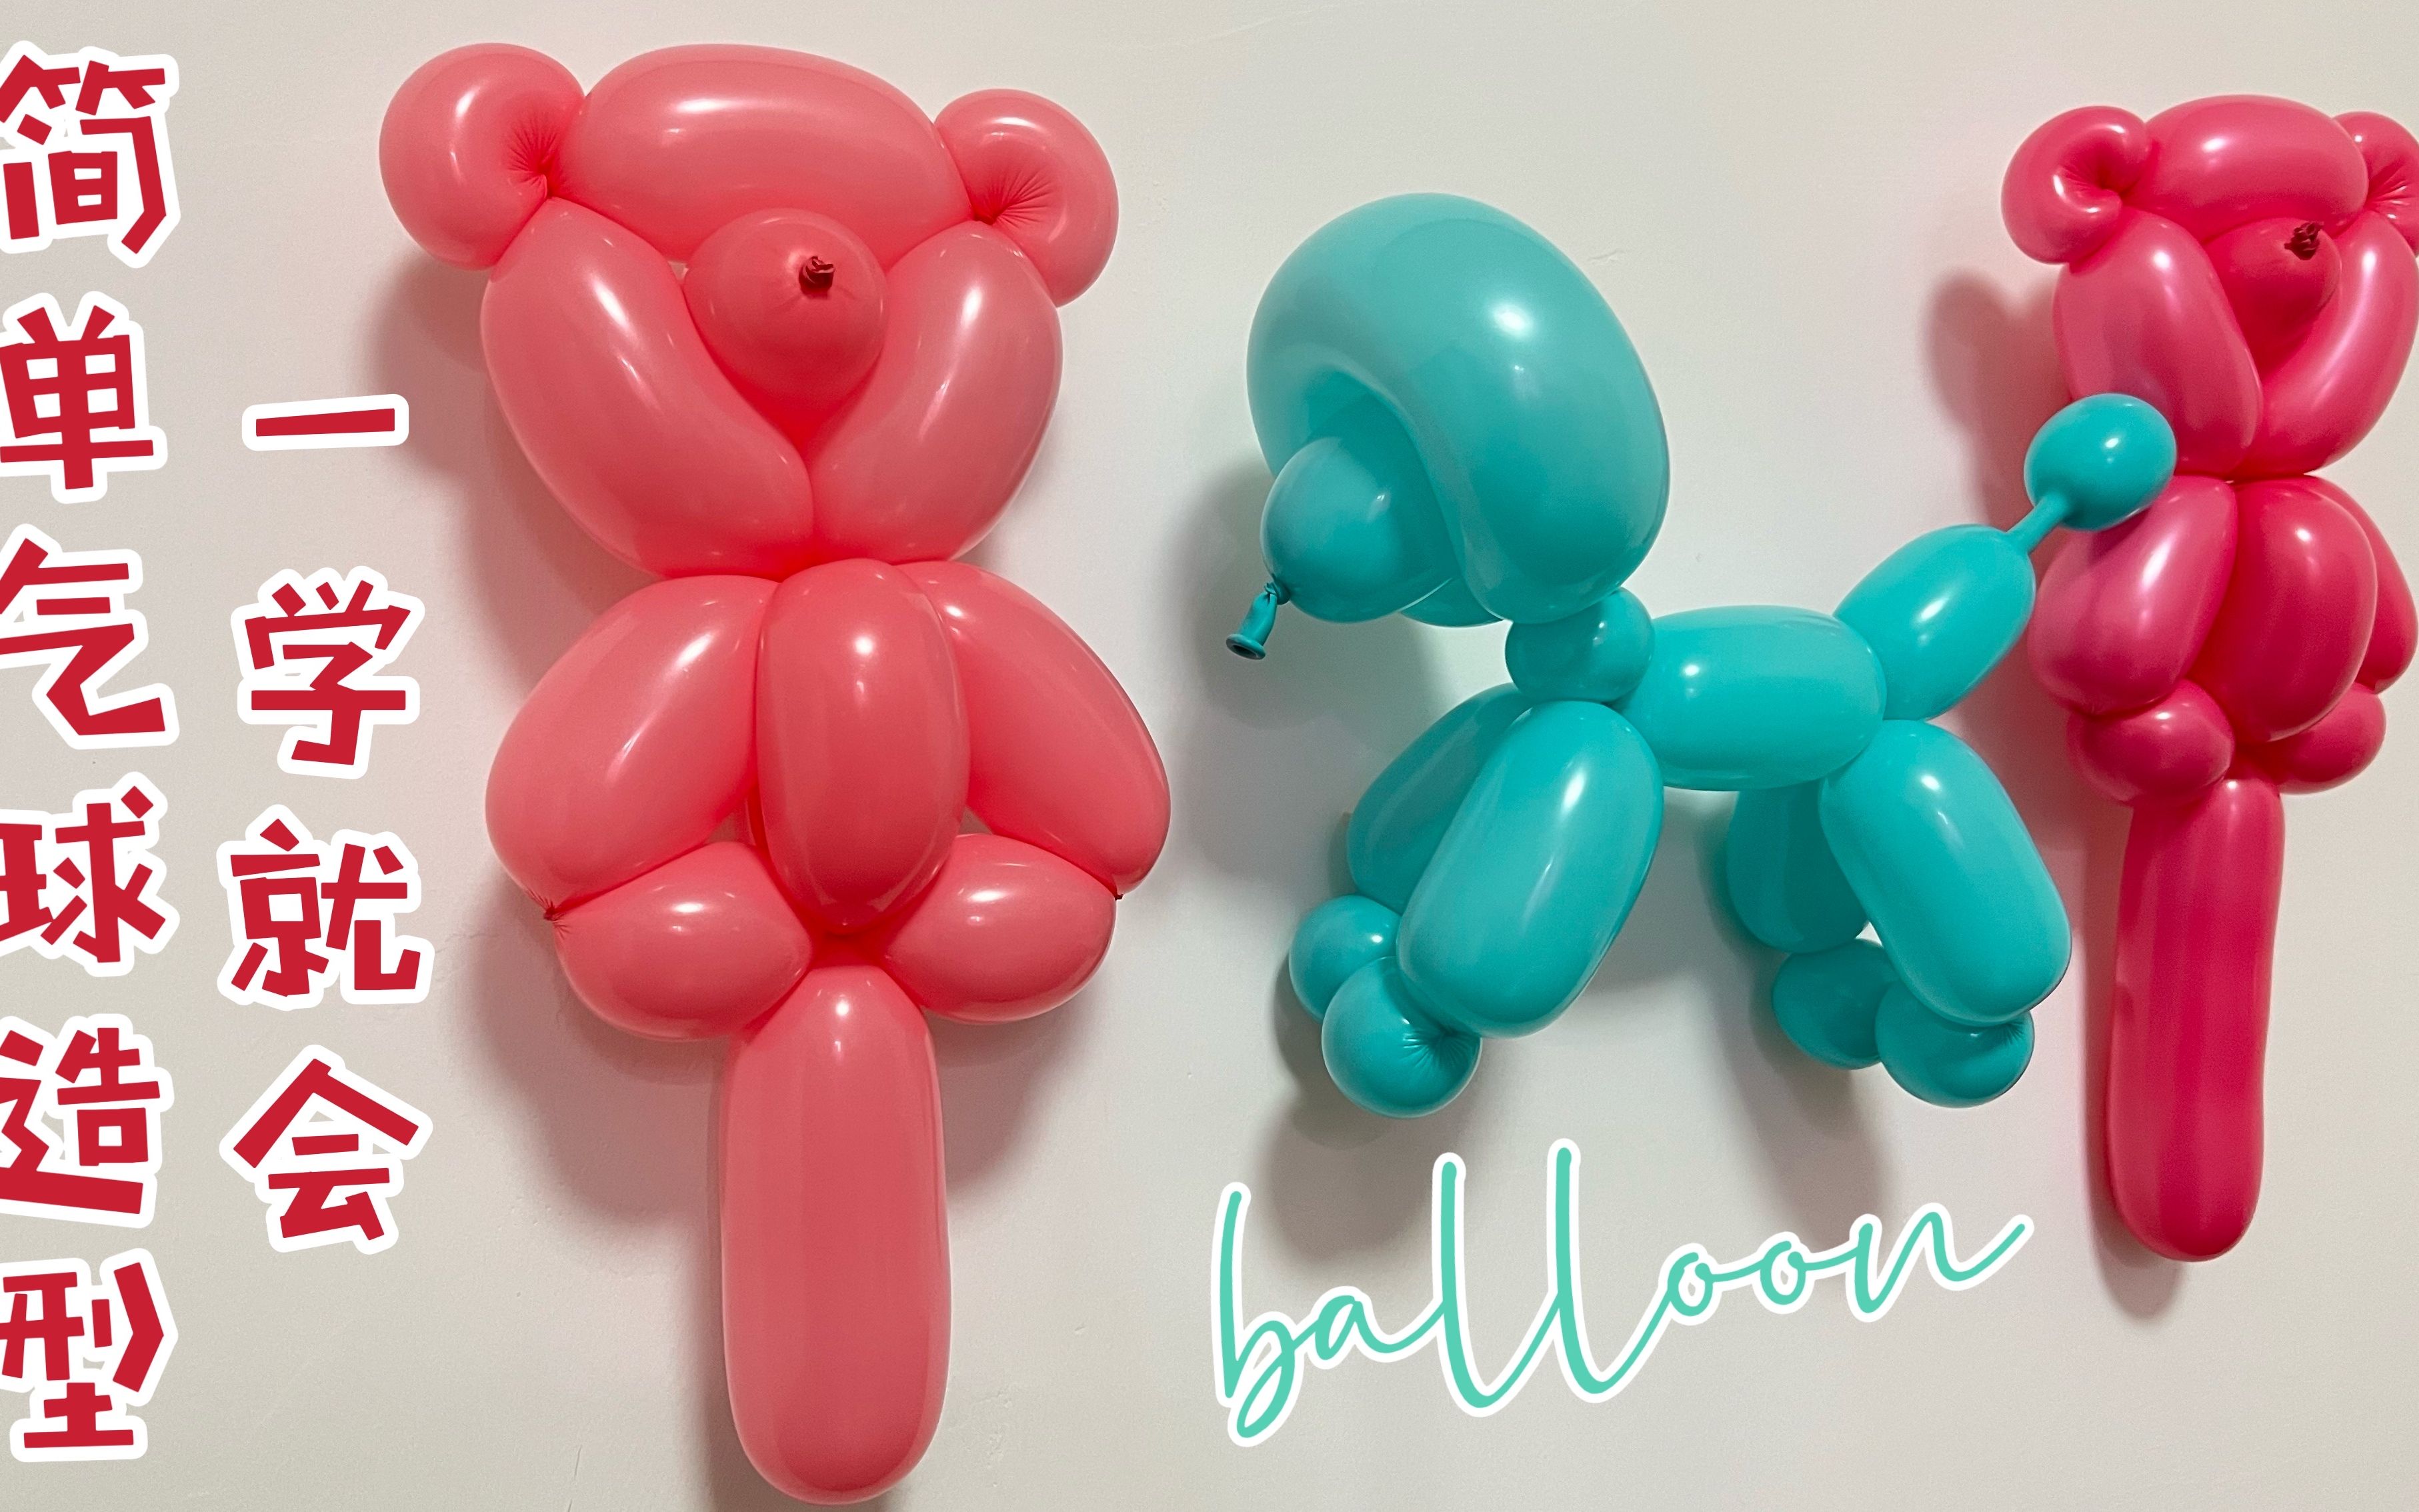 小熊 小狗气球造型教学 简单魔术长条气球造型教程balloon art